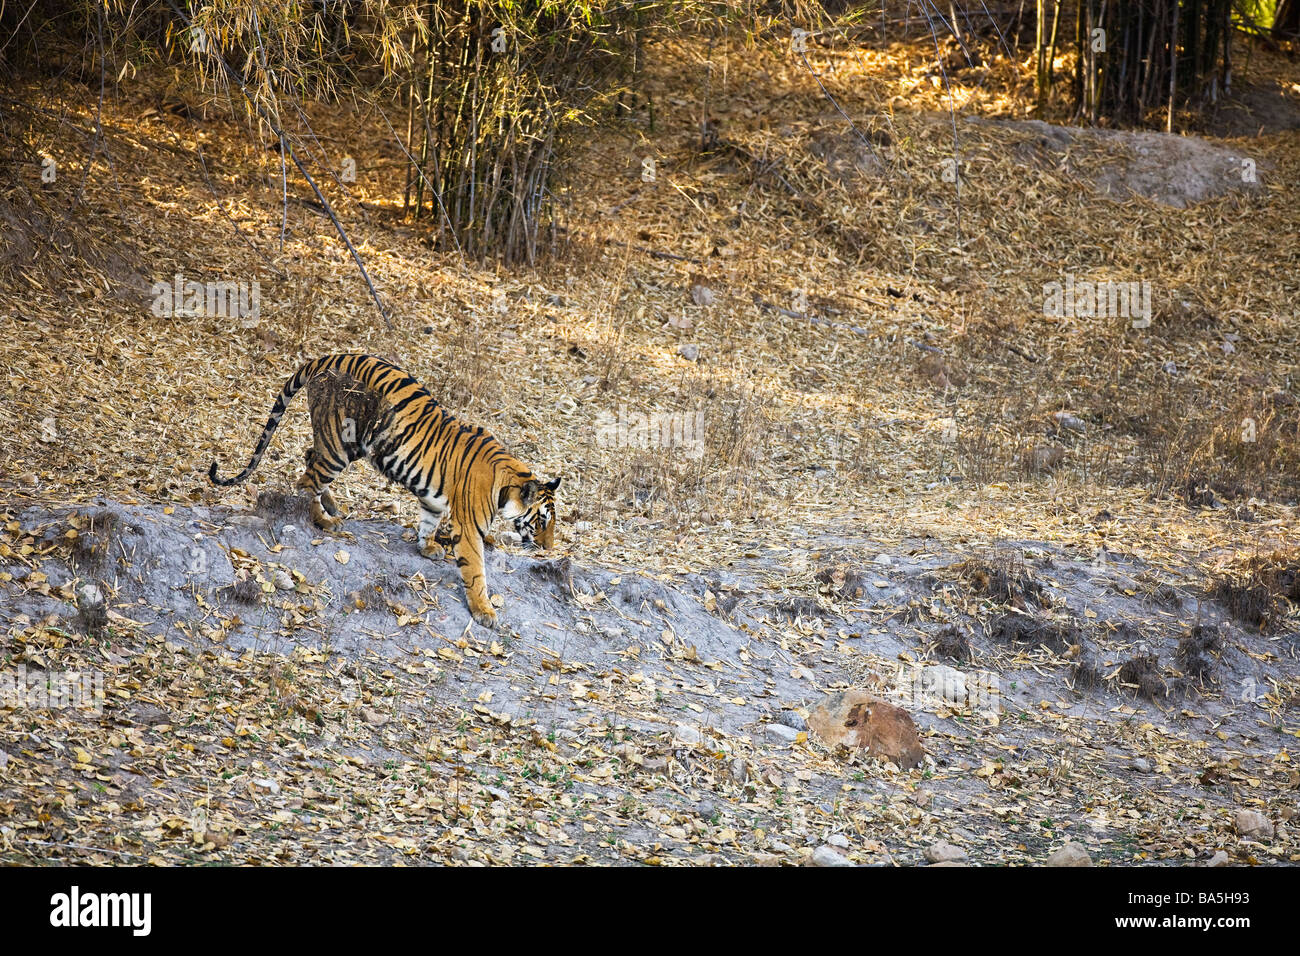 Tigre du Bengale Royal sauvage dans le Madhya Pradesh Bandhavgarh Parc national du nord de l'Inde Asie Banque D'Images